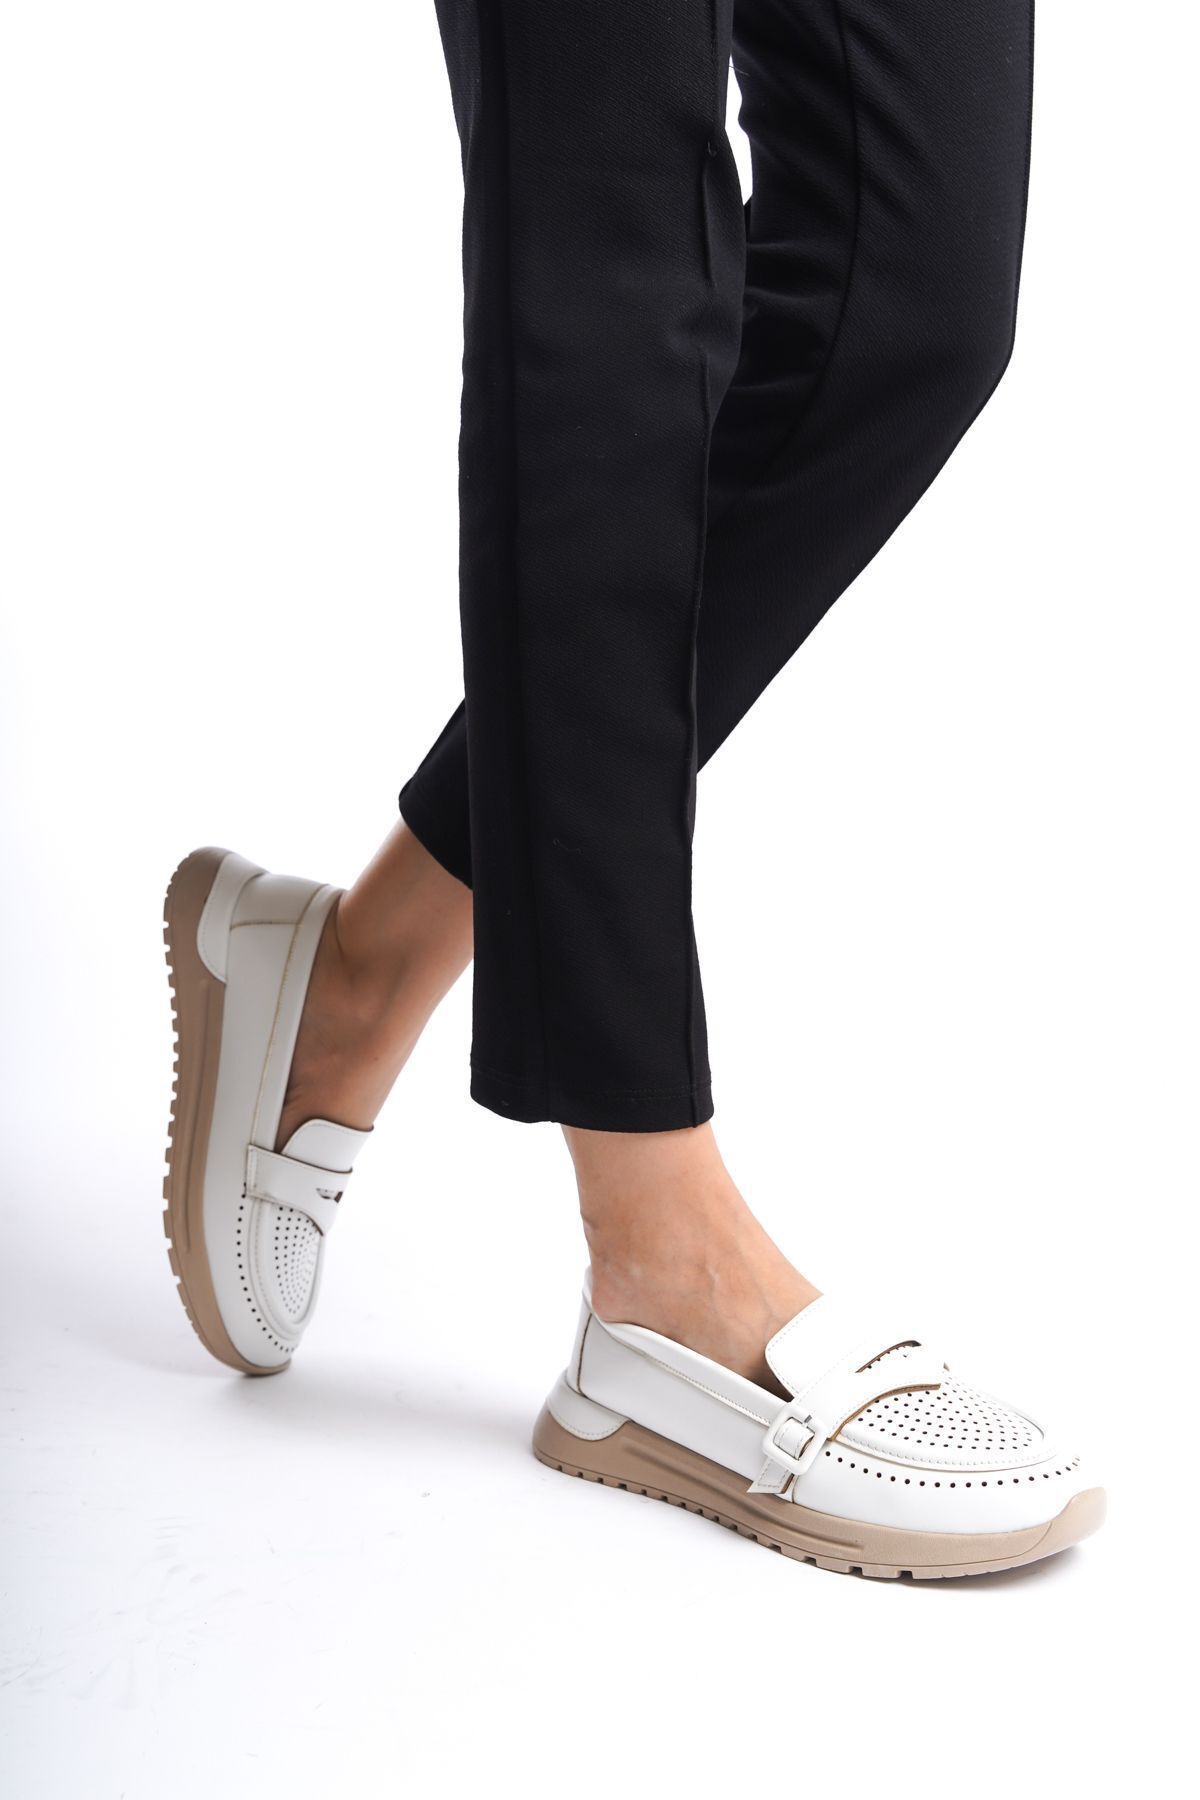 Limeo Beyaz Cilt Yandan Toka Detaylı Orta Yüksek Taban Günlük Loafer Makosen Kadın Ayakkabı